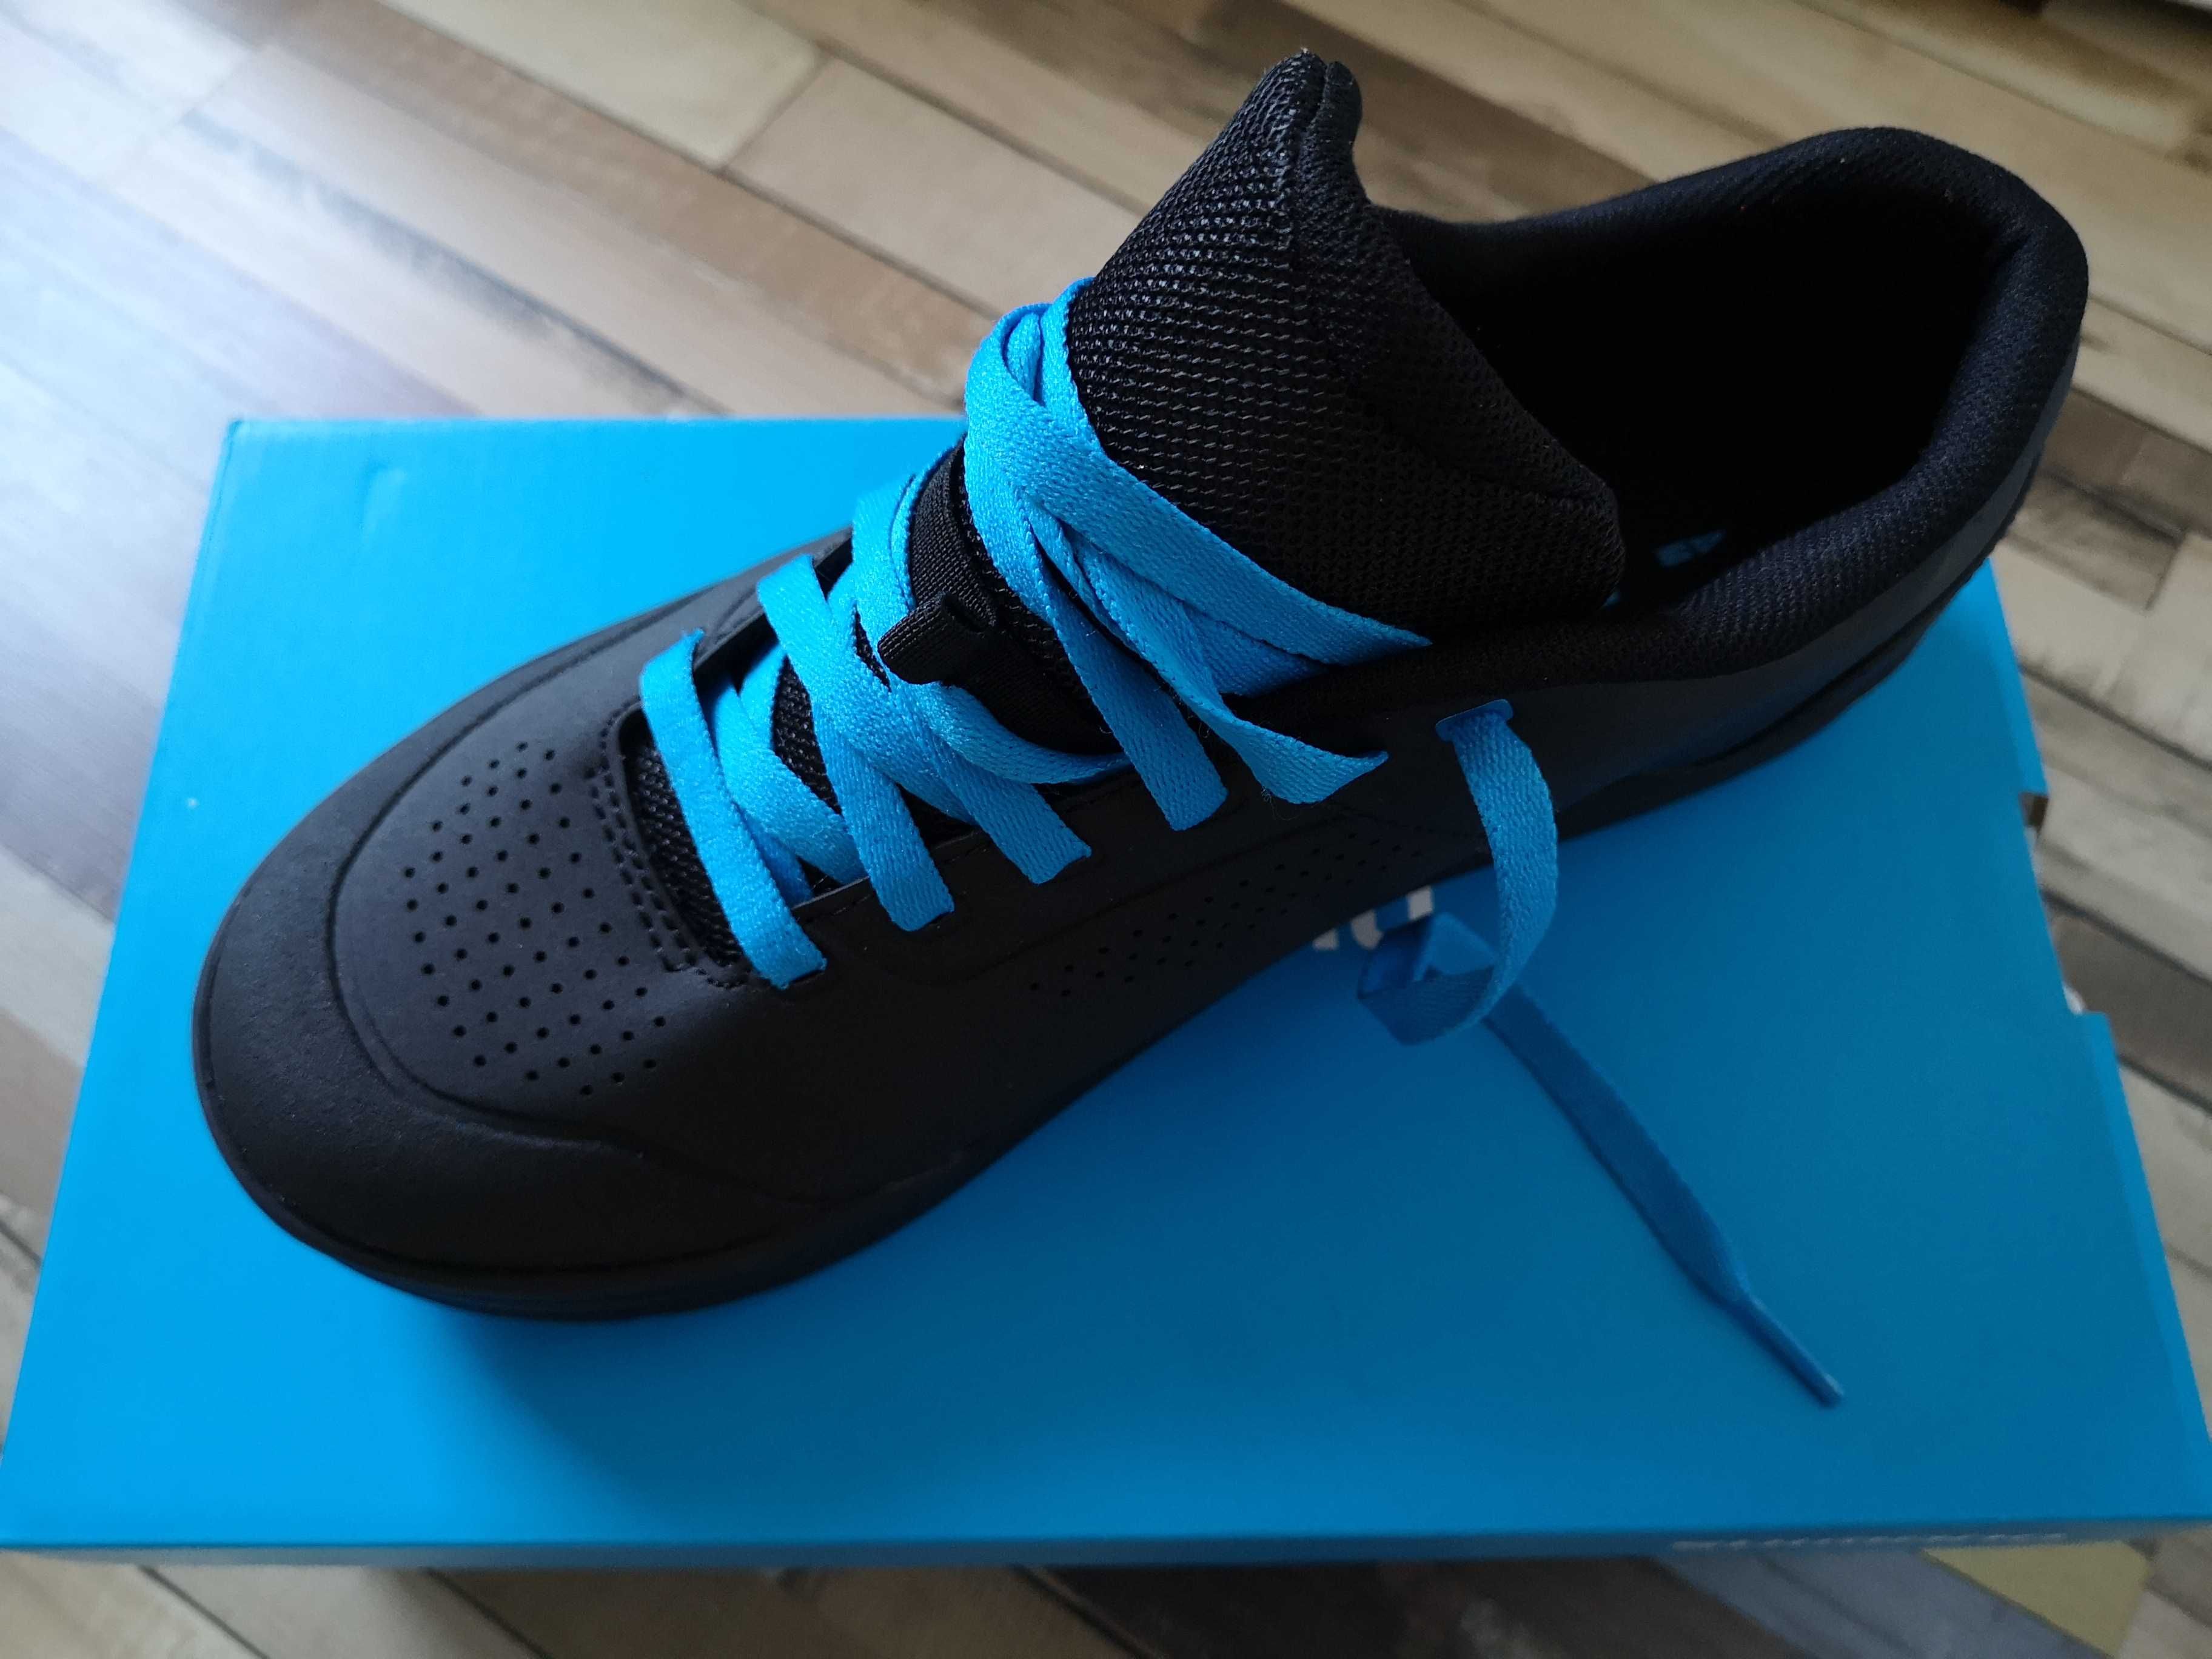 Adidasi Shimano flatshoes